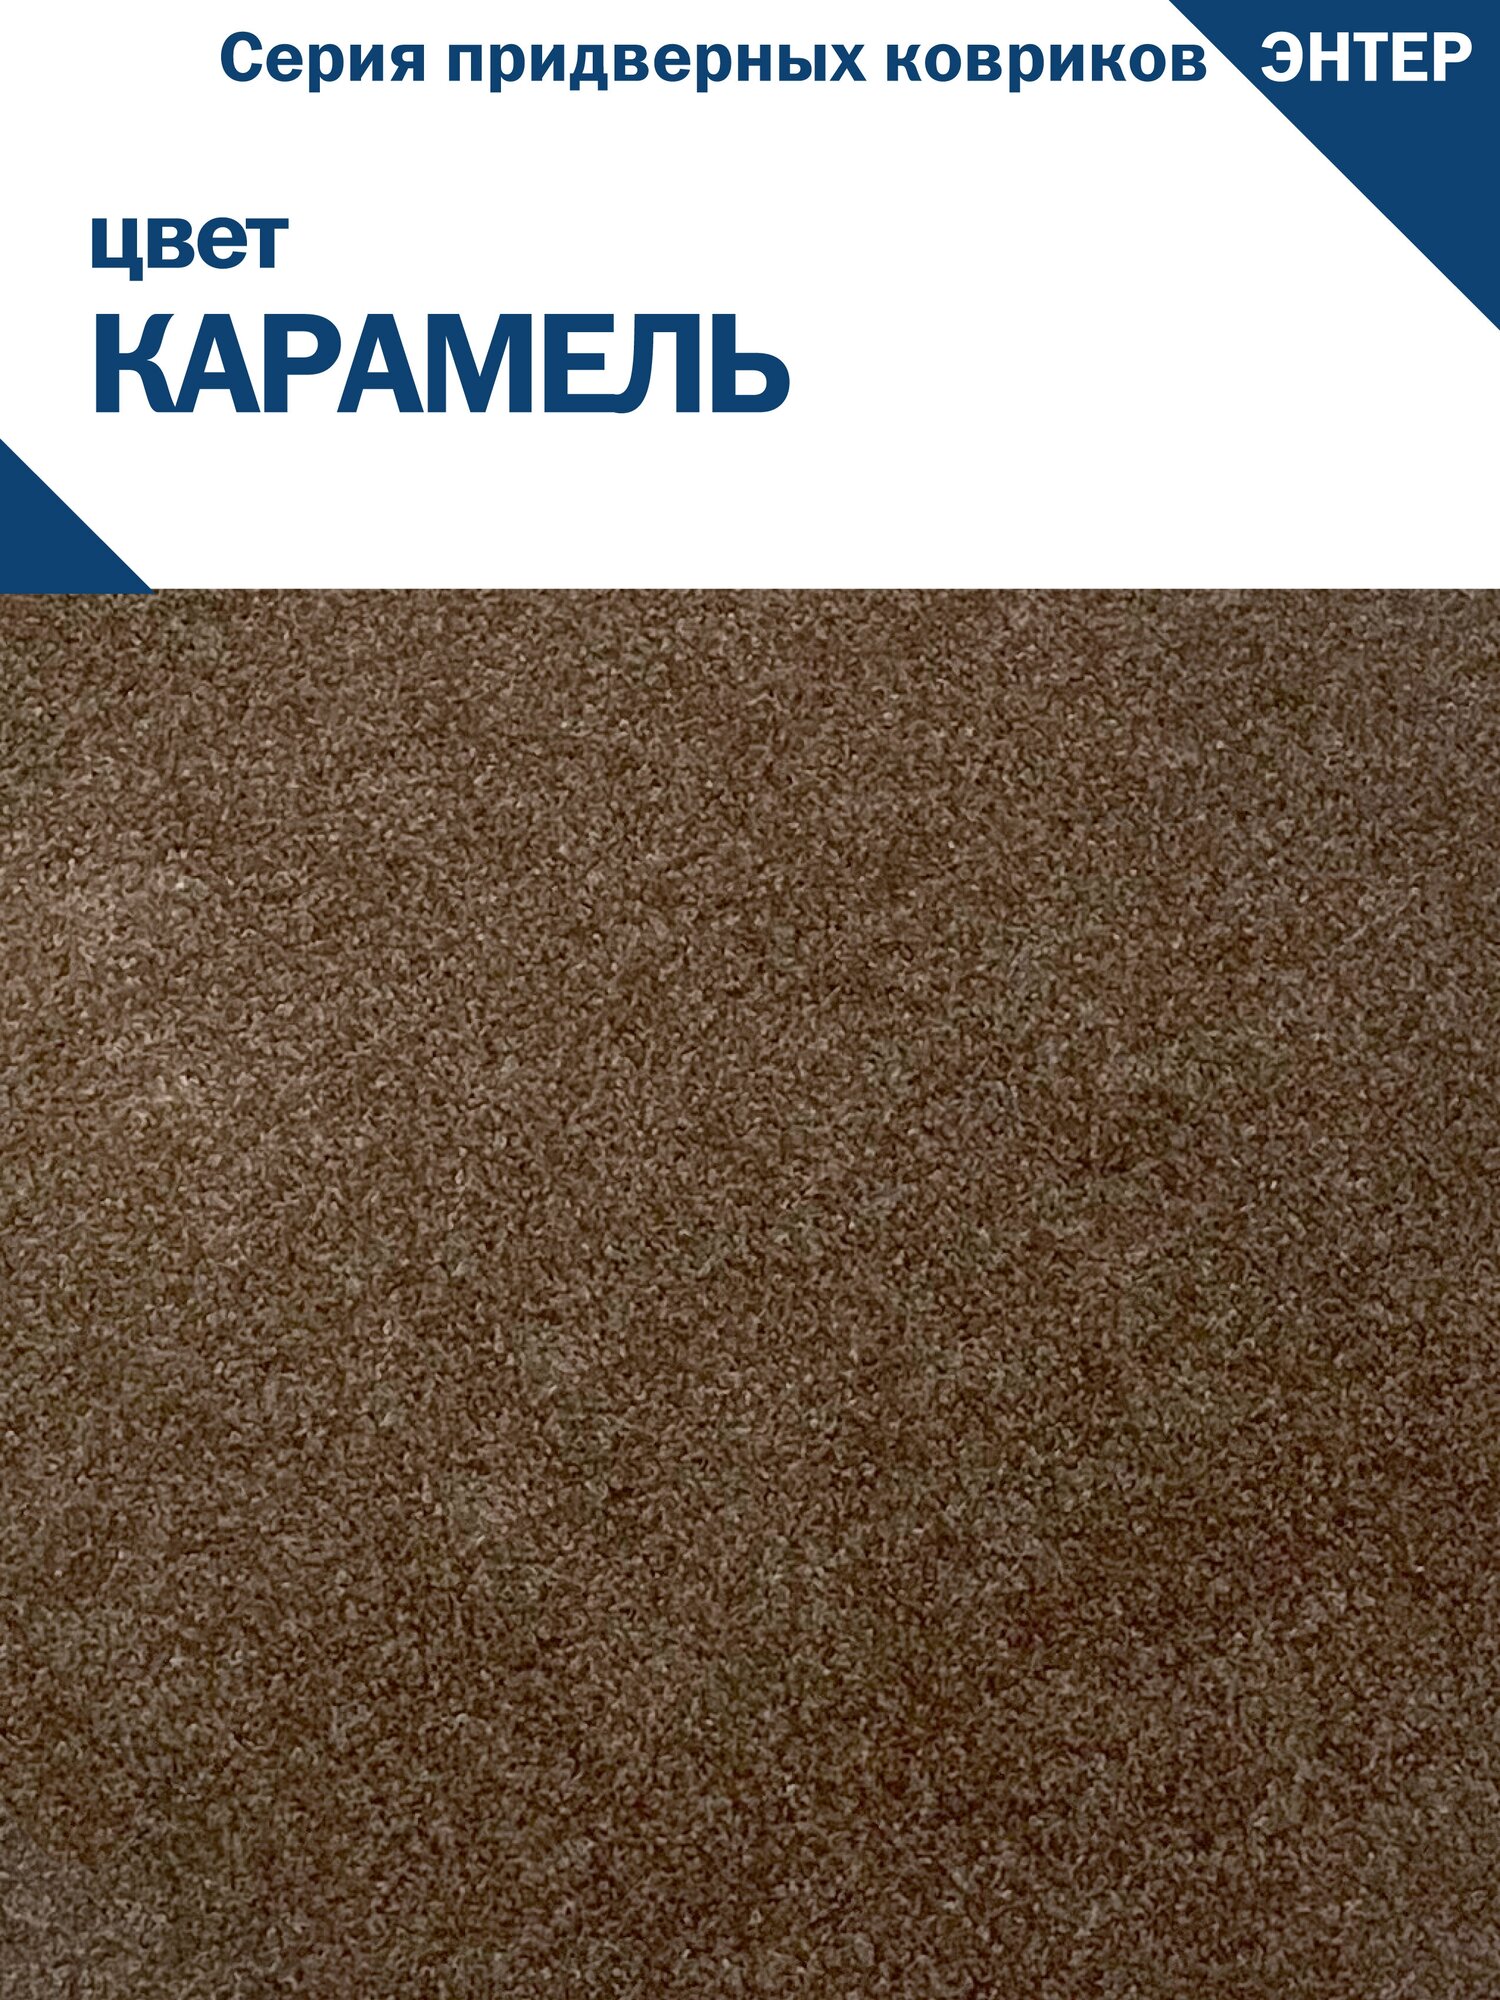 Придверный грязесобирающий коврик симаттекс, серия энтер, 60х80 см., Карамель - фотография № 3